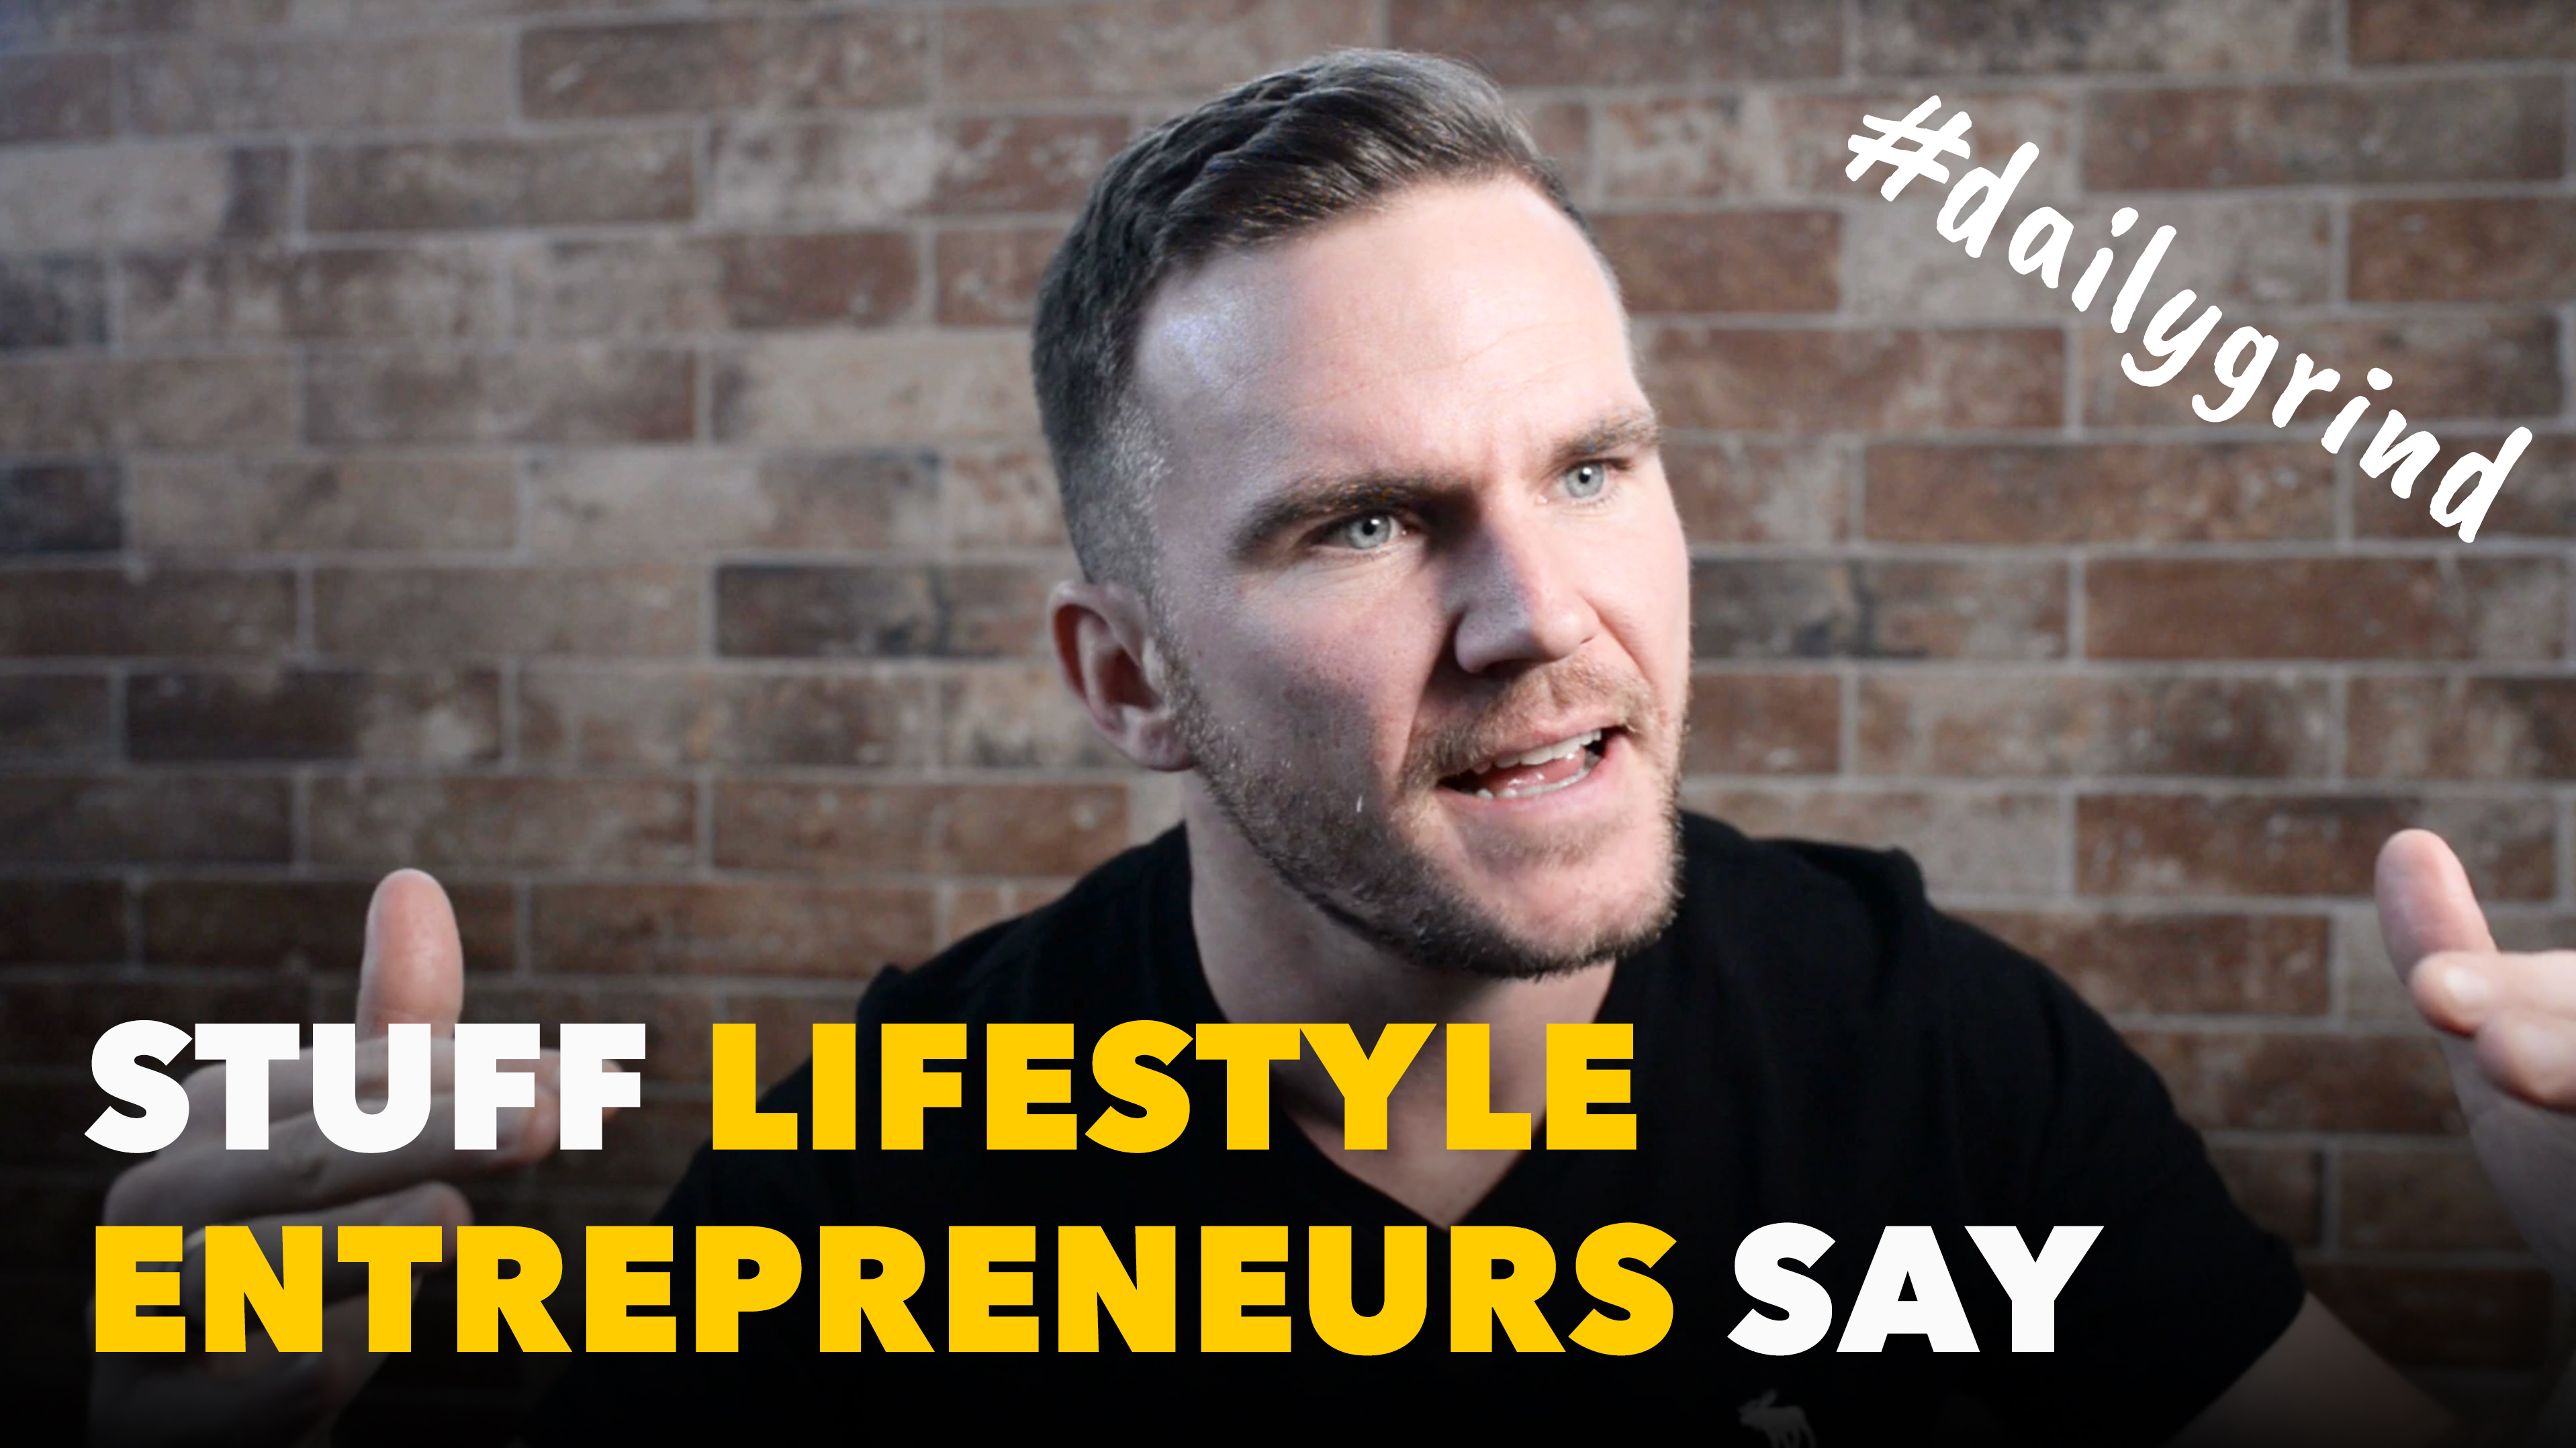 Stuff lifestyle entrepreneurs say